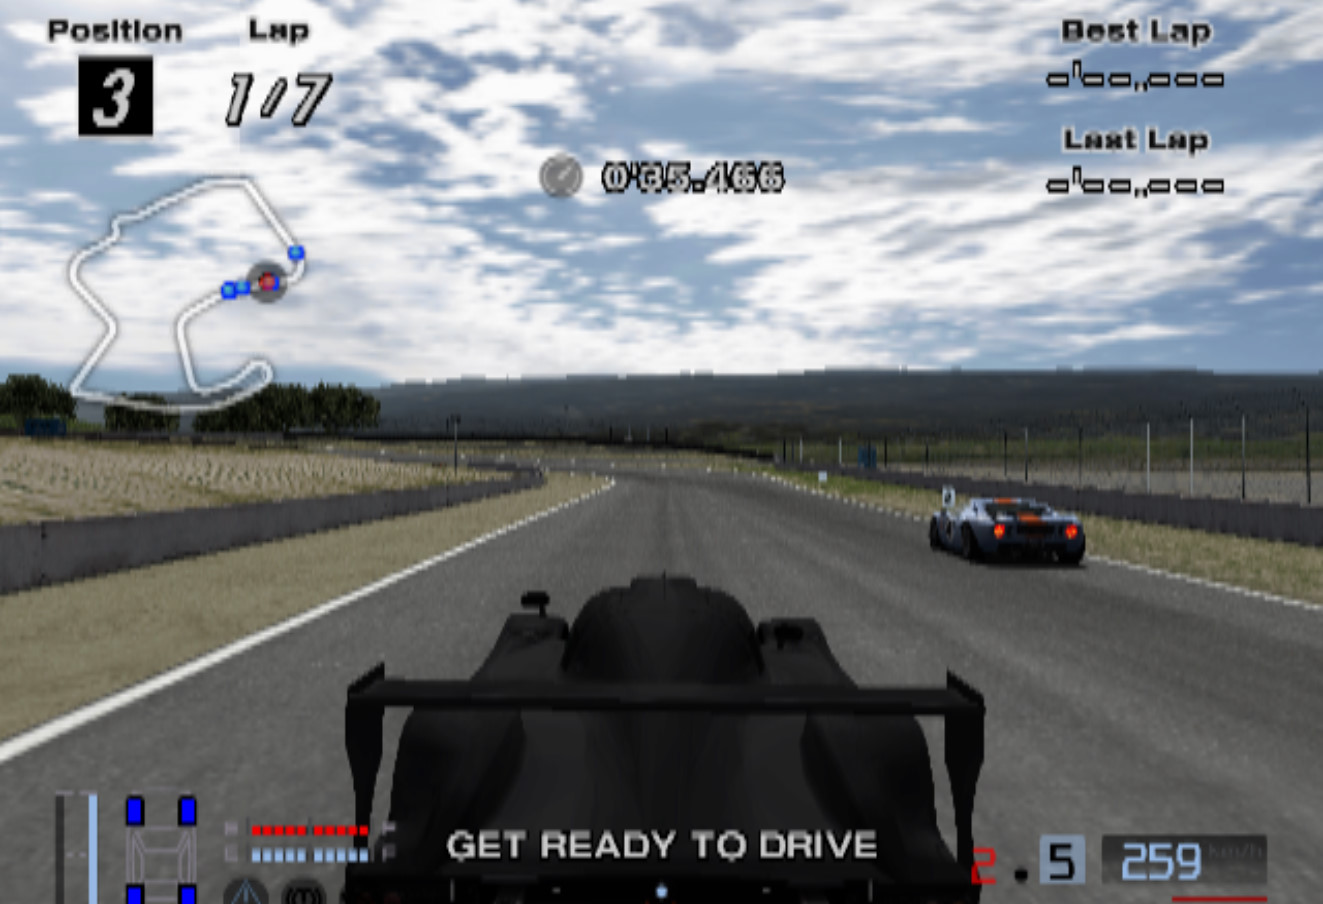 Gran Turismo 4 (Europe, Australia) (En,Fr,De,Es,It) ISO Download < PS2 ISOs